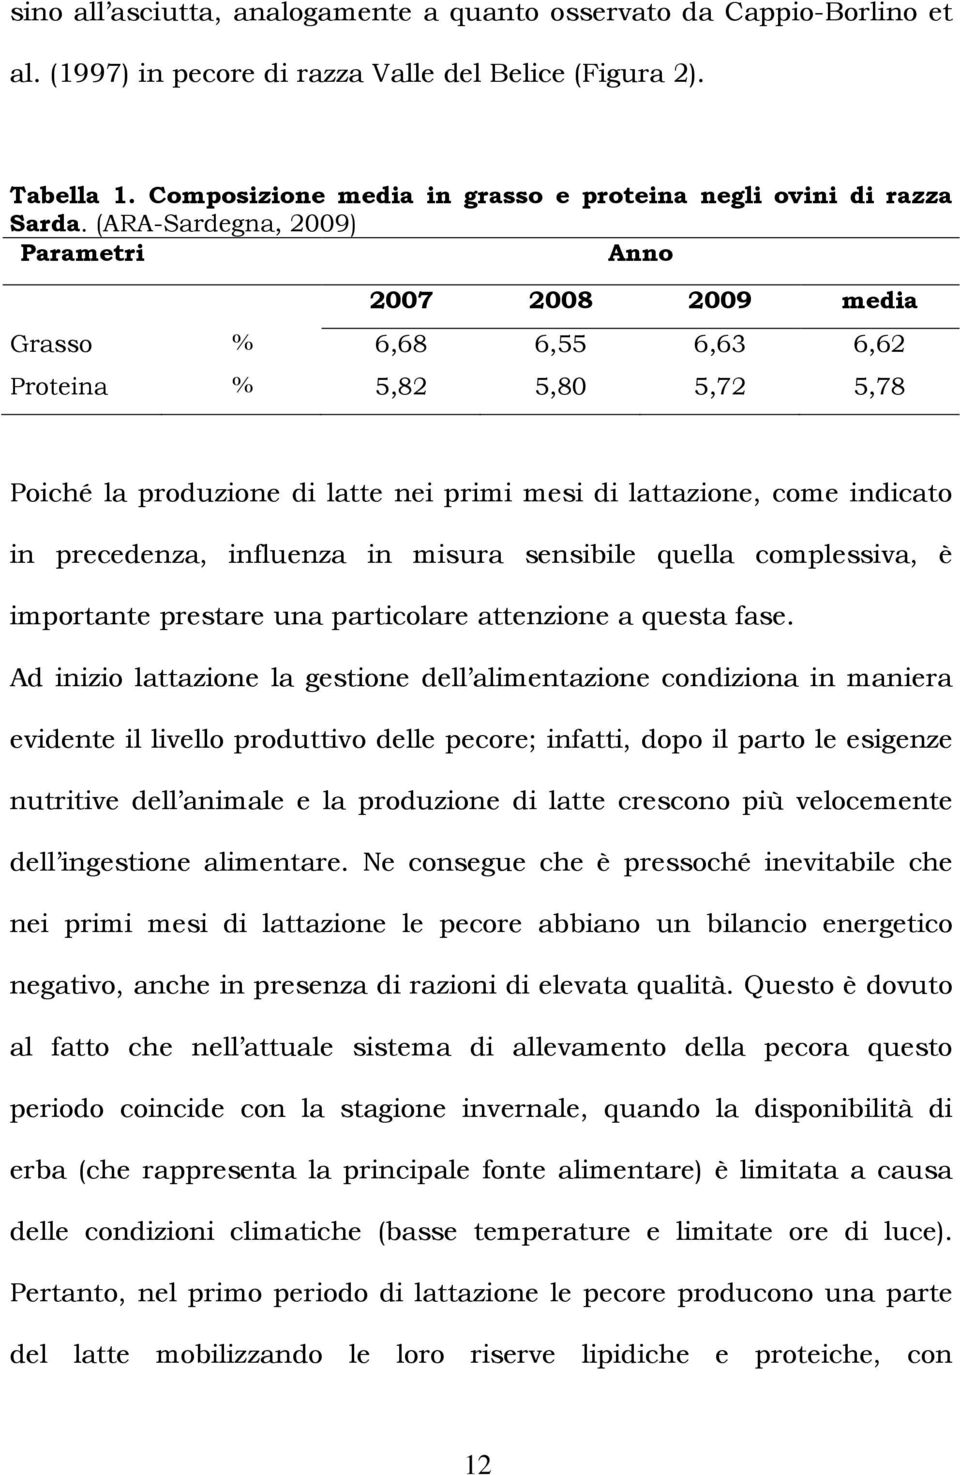 (ARA-Sardegna, 2009) Parametri Anno 2007 2008 2009 media Grasso % 6,68 6,55 6,63 6,62 Proteina % 5,82 5,80 5,72 5,78 Poiché la produzione di latte nei primi mesi di lattazione, come indicato in